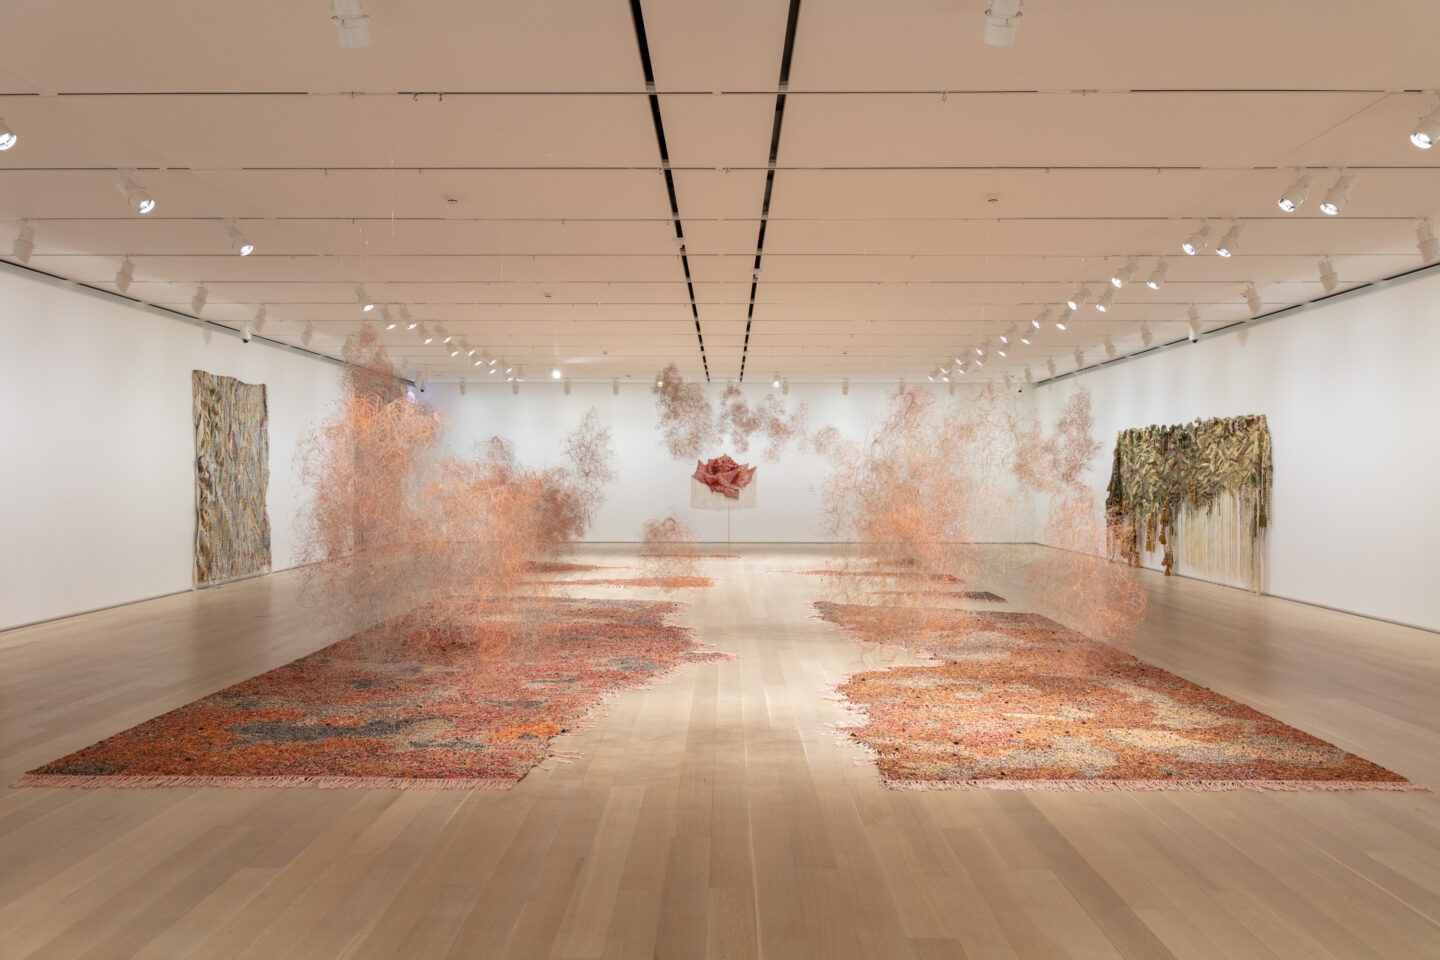 Vista de instalação de Igshaan Adams no The Art Institute of Chicago. A instalação é composta de duas partes que ficam no chão, abrindo um caminho vazio entre elas, e "nuvens" de poeira que são feitas de miçangas vermelhas, amarelas e laranjas, assim como o chão.